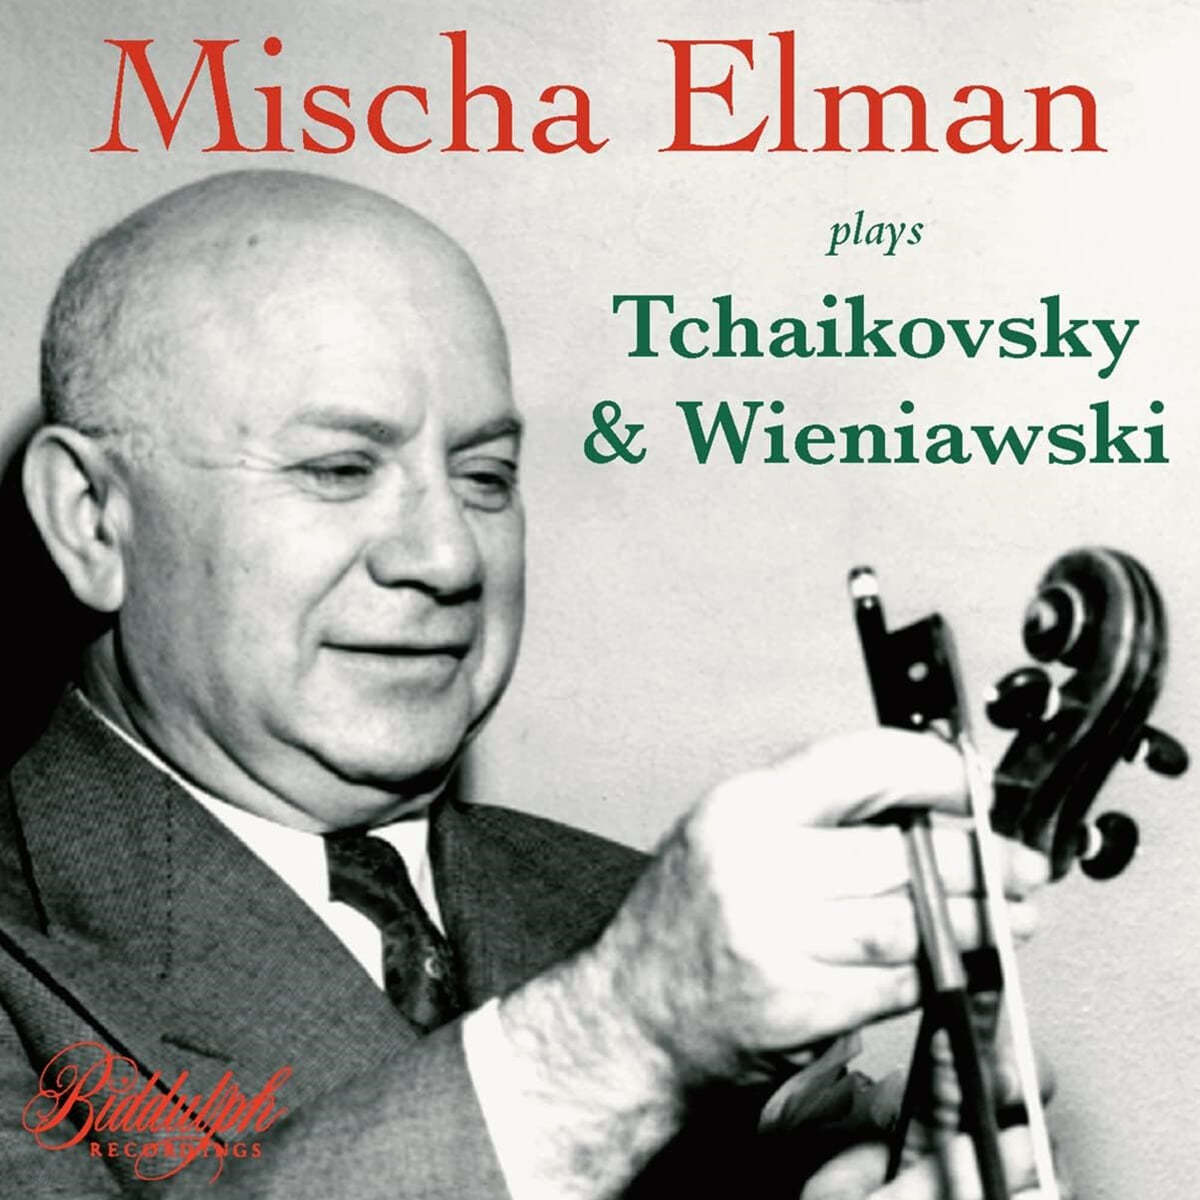 Mischa Elman 미샤 엘만이 연주하는 차이콥스키와 비에니아프스키 (Mischa Elman Plays Tchaikovsky and Wieniawski)